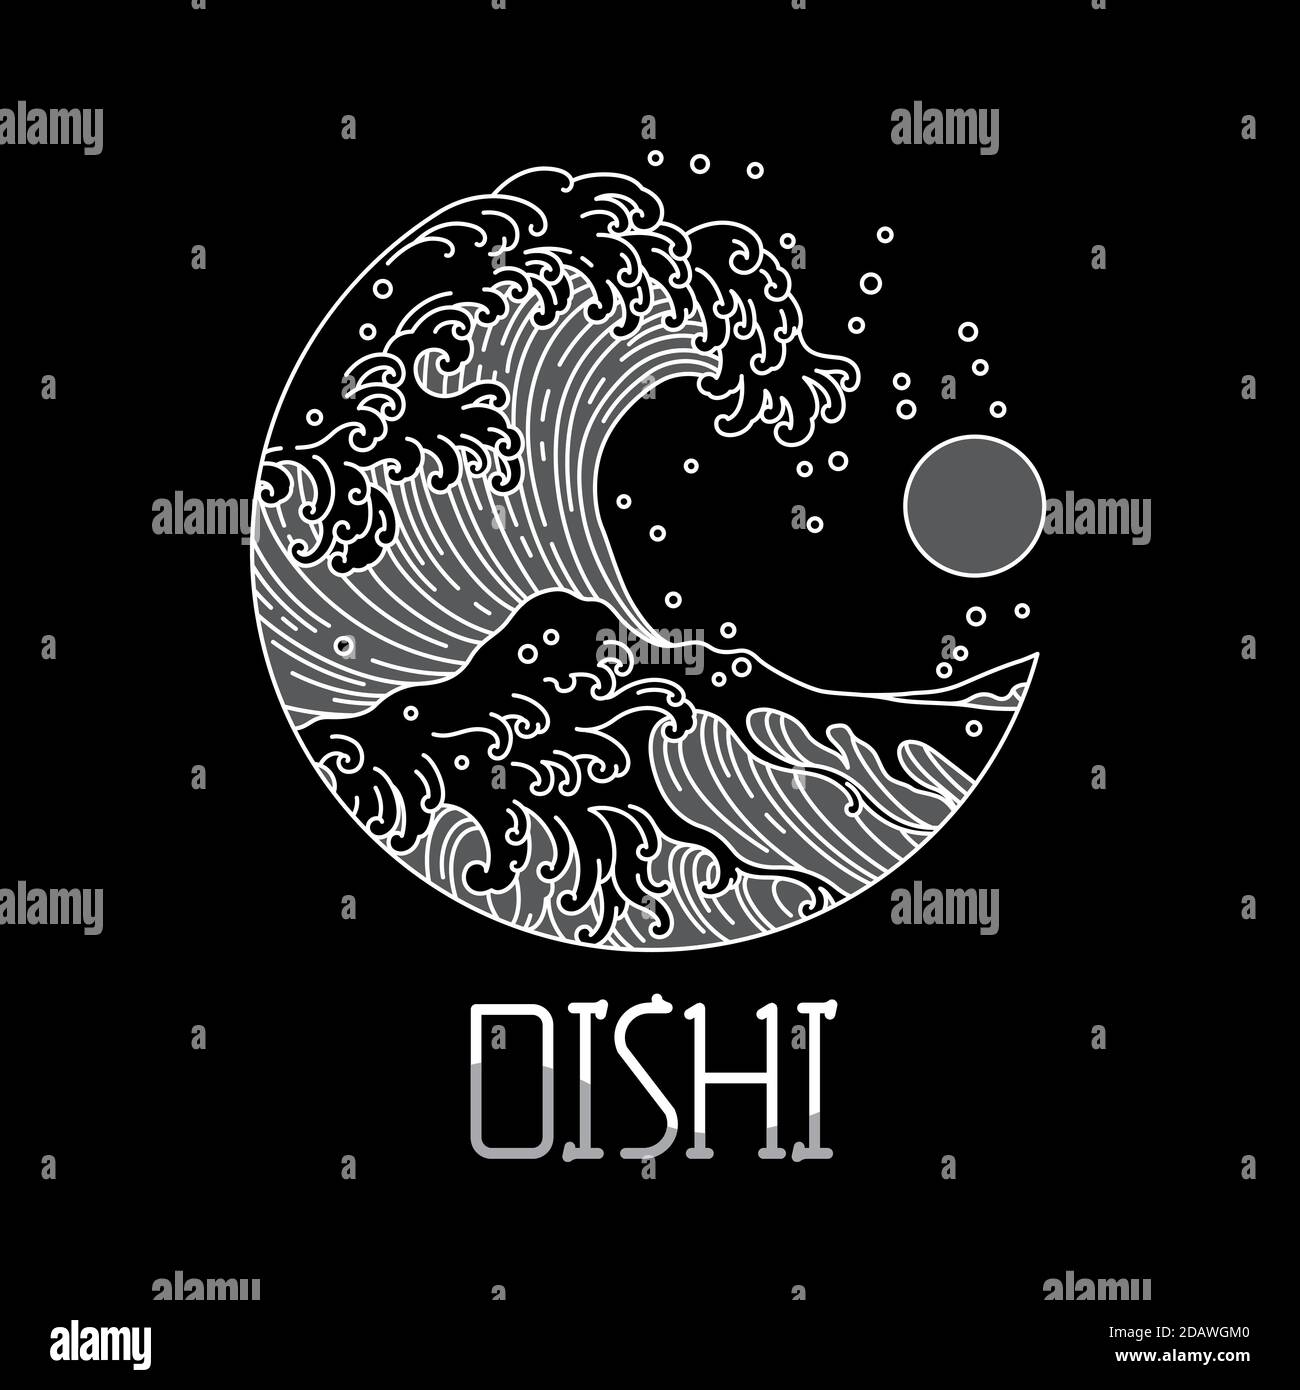 Il design del logo giapponese per il concetto giapponese con grande onda oceano e acqua e grande immagine vettoriale del sole. Oishi è lingua giapponese significa a delicous. Illustrazione Vettoriale